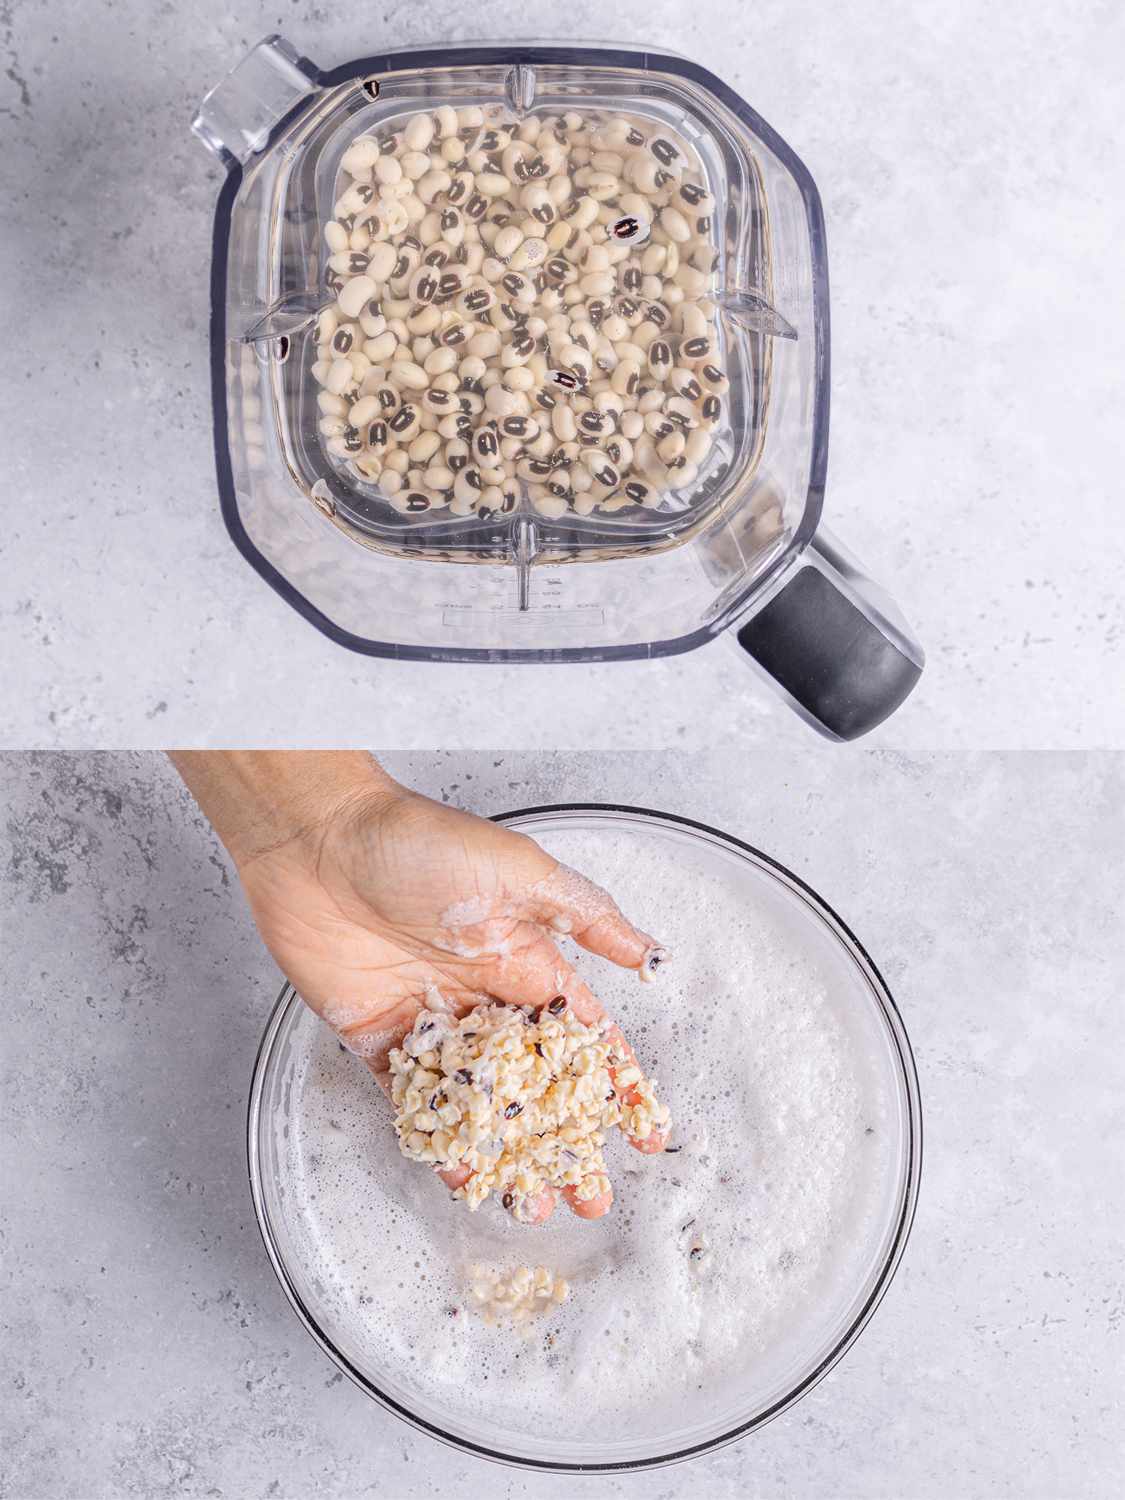 两个图像拼贴。上图:豌豆覆盖着水在搅拌机里。底部:一只手举起豌豆显示壳被移除